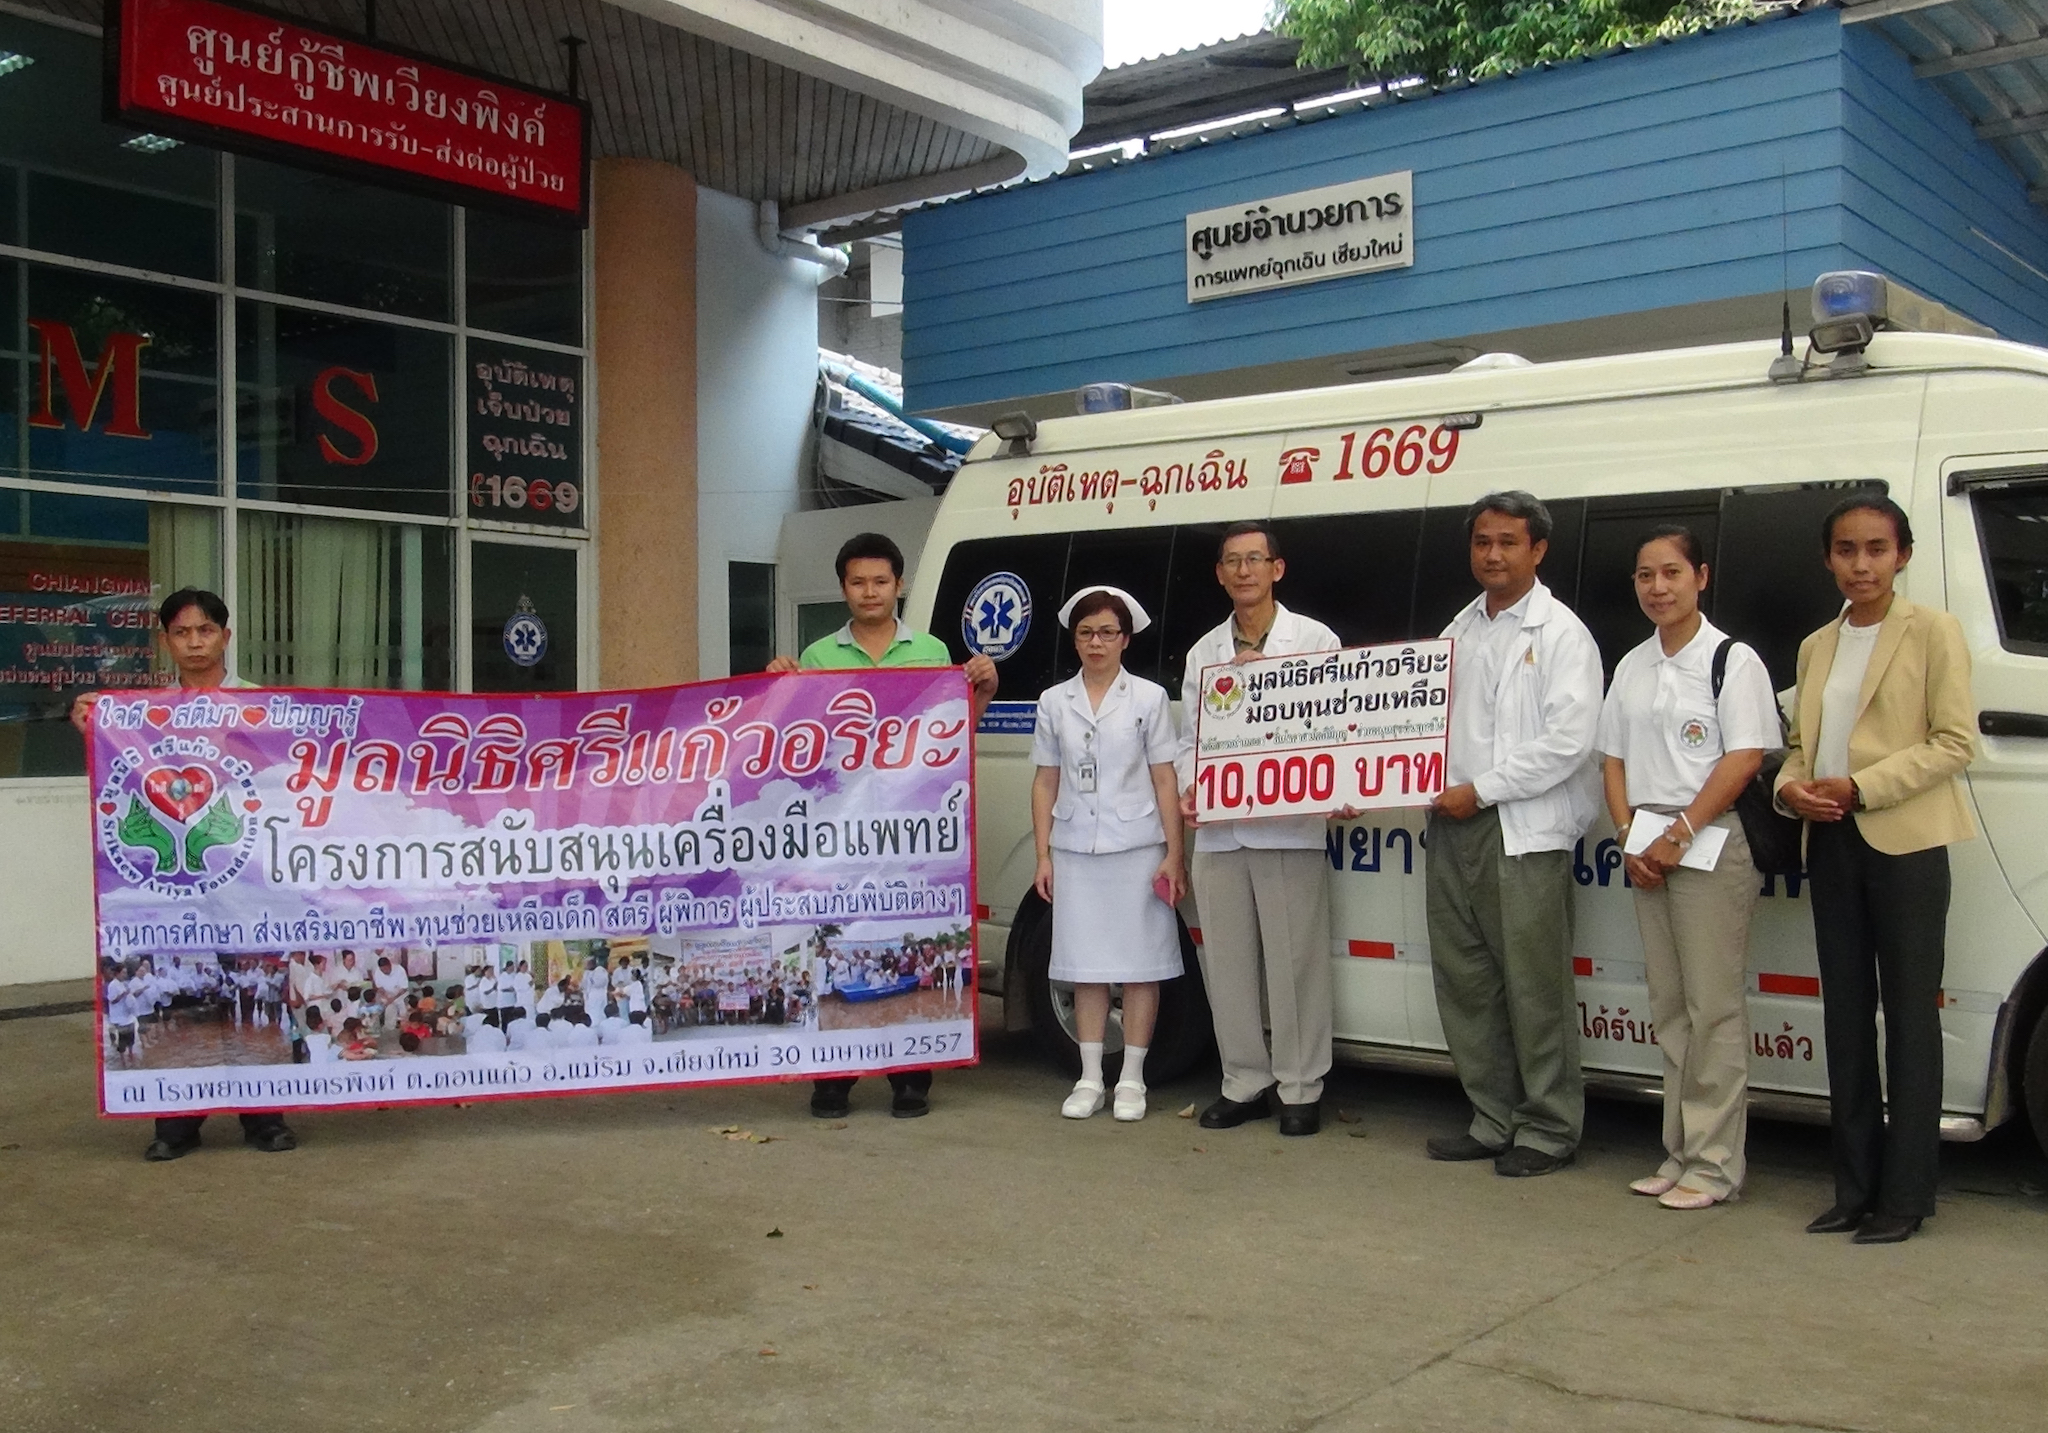 โครงการมอบทุนช่วยเหลือสนับสนุนเครื่องมือแพทย์ วันที่ 30 เมษายน 2557   ณ โรงพยาบาลนครพิงค์ อ.แม่ริม จ.เชียงใหม่